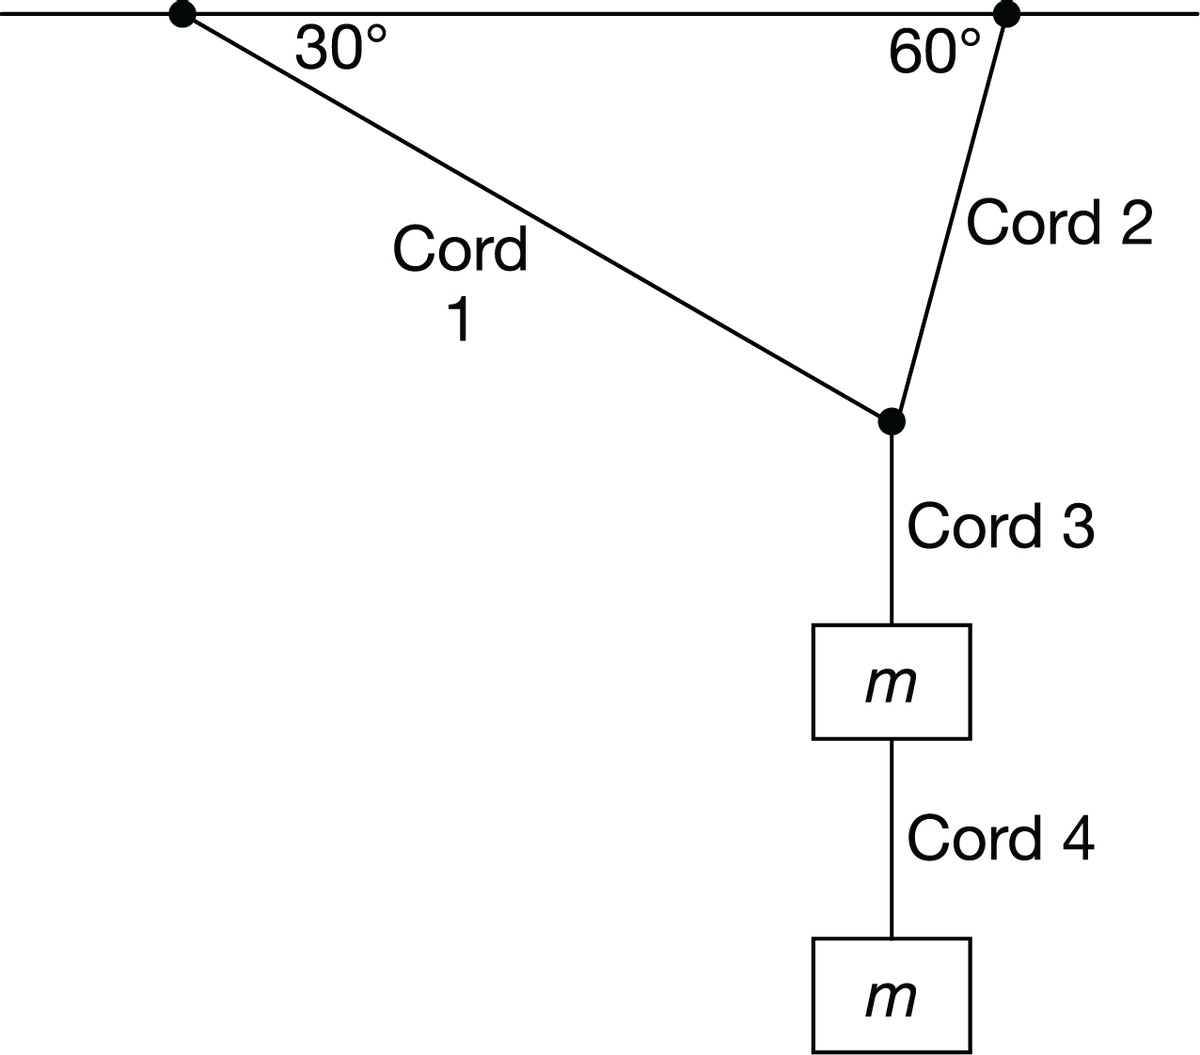 30°
60°
Cord 2
Cord
1
Cord 3
m
Cord 4
m
